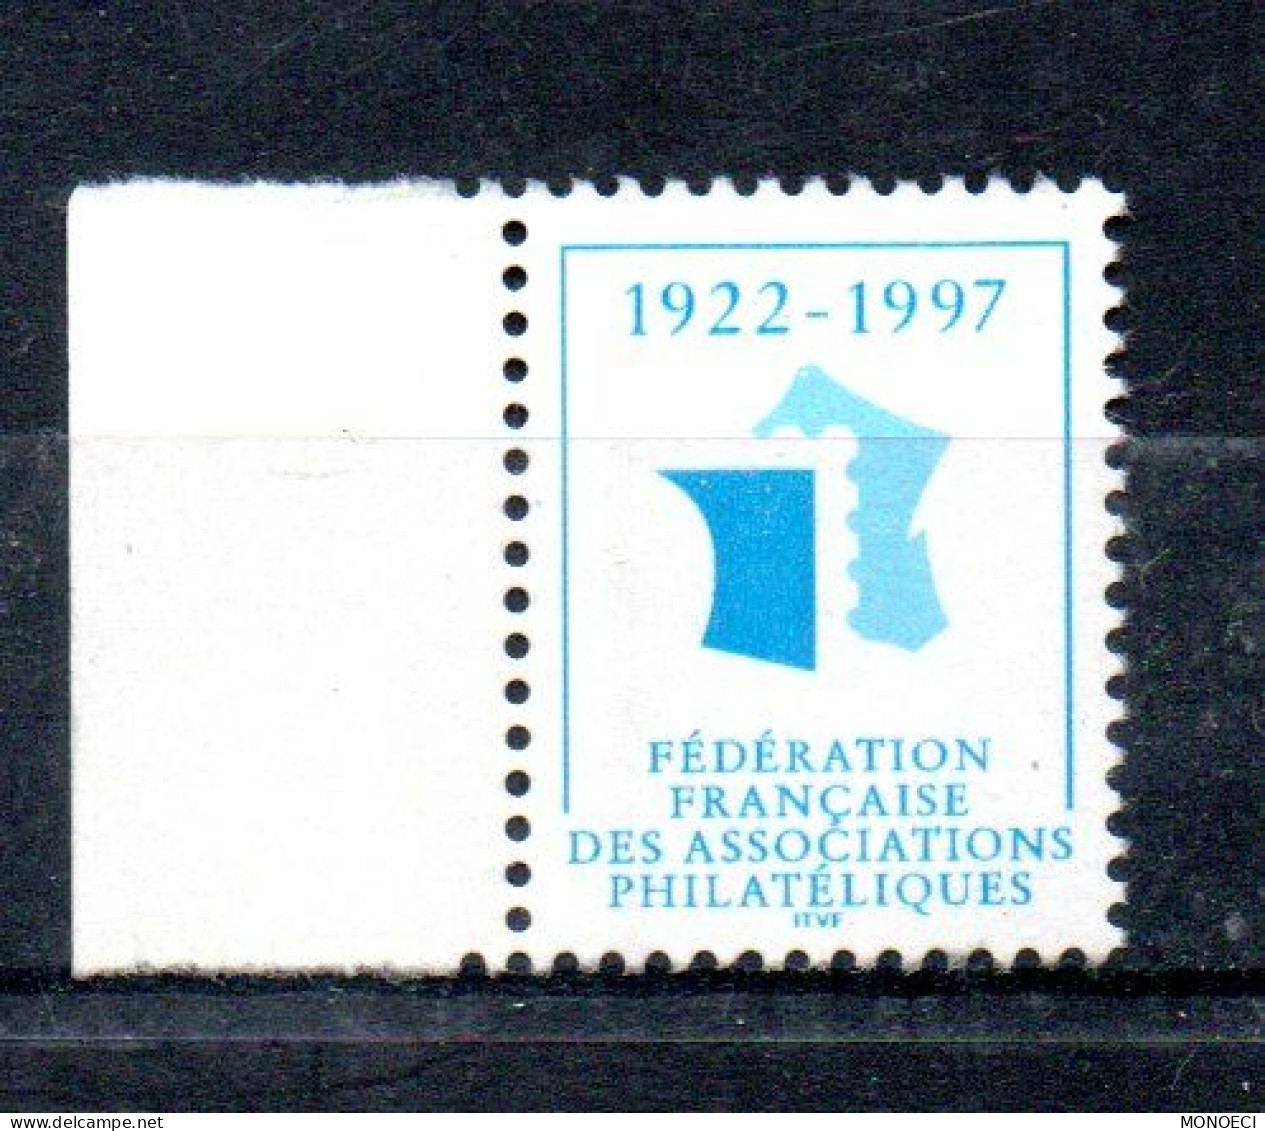 FRANCE -- ERRINOPHILIE -- Vignette, Cinderella -- Fédération Française Des Associations Philatéliques 1922 - 1997 - Esposizioni Filateliche